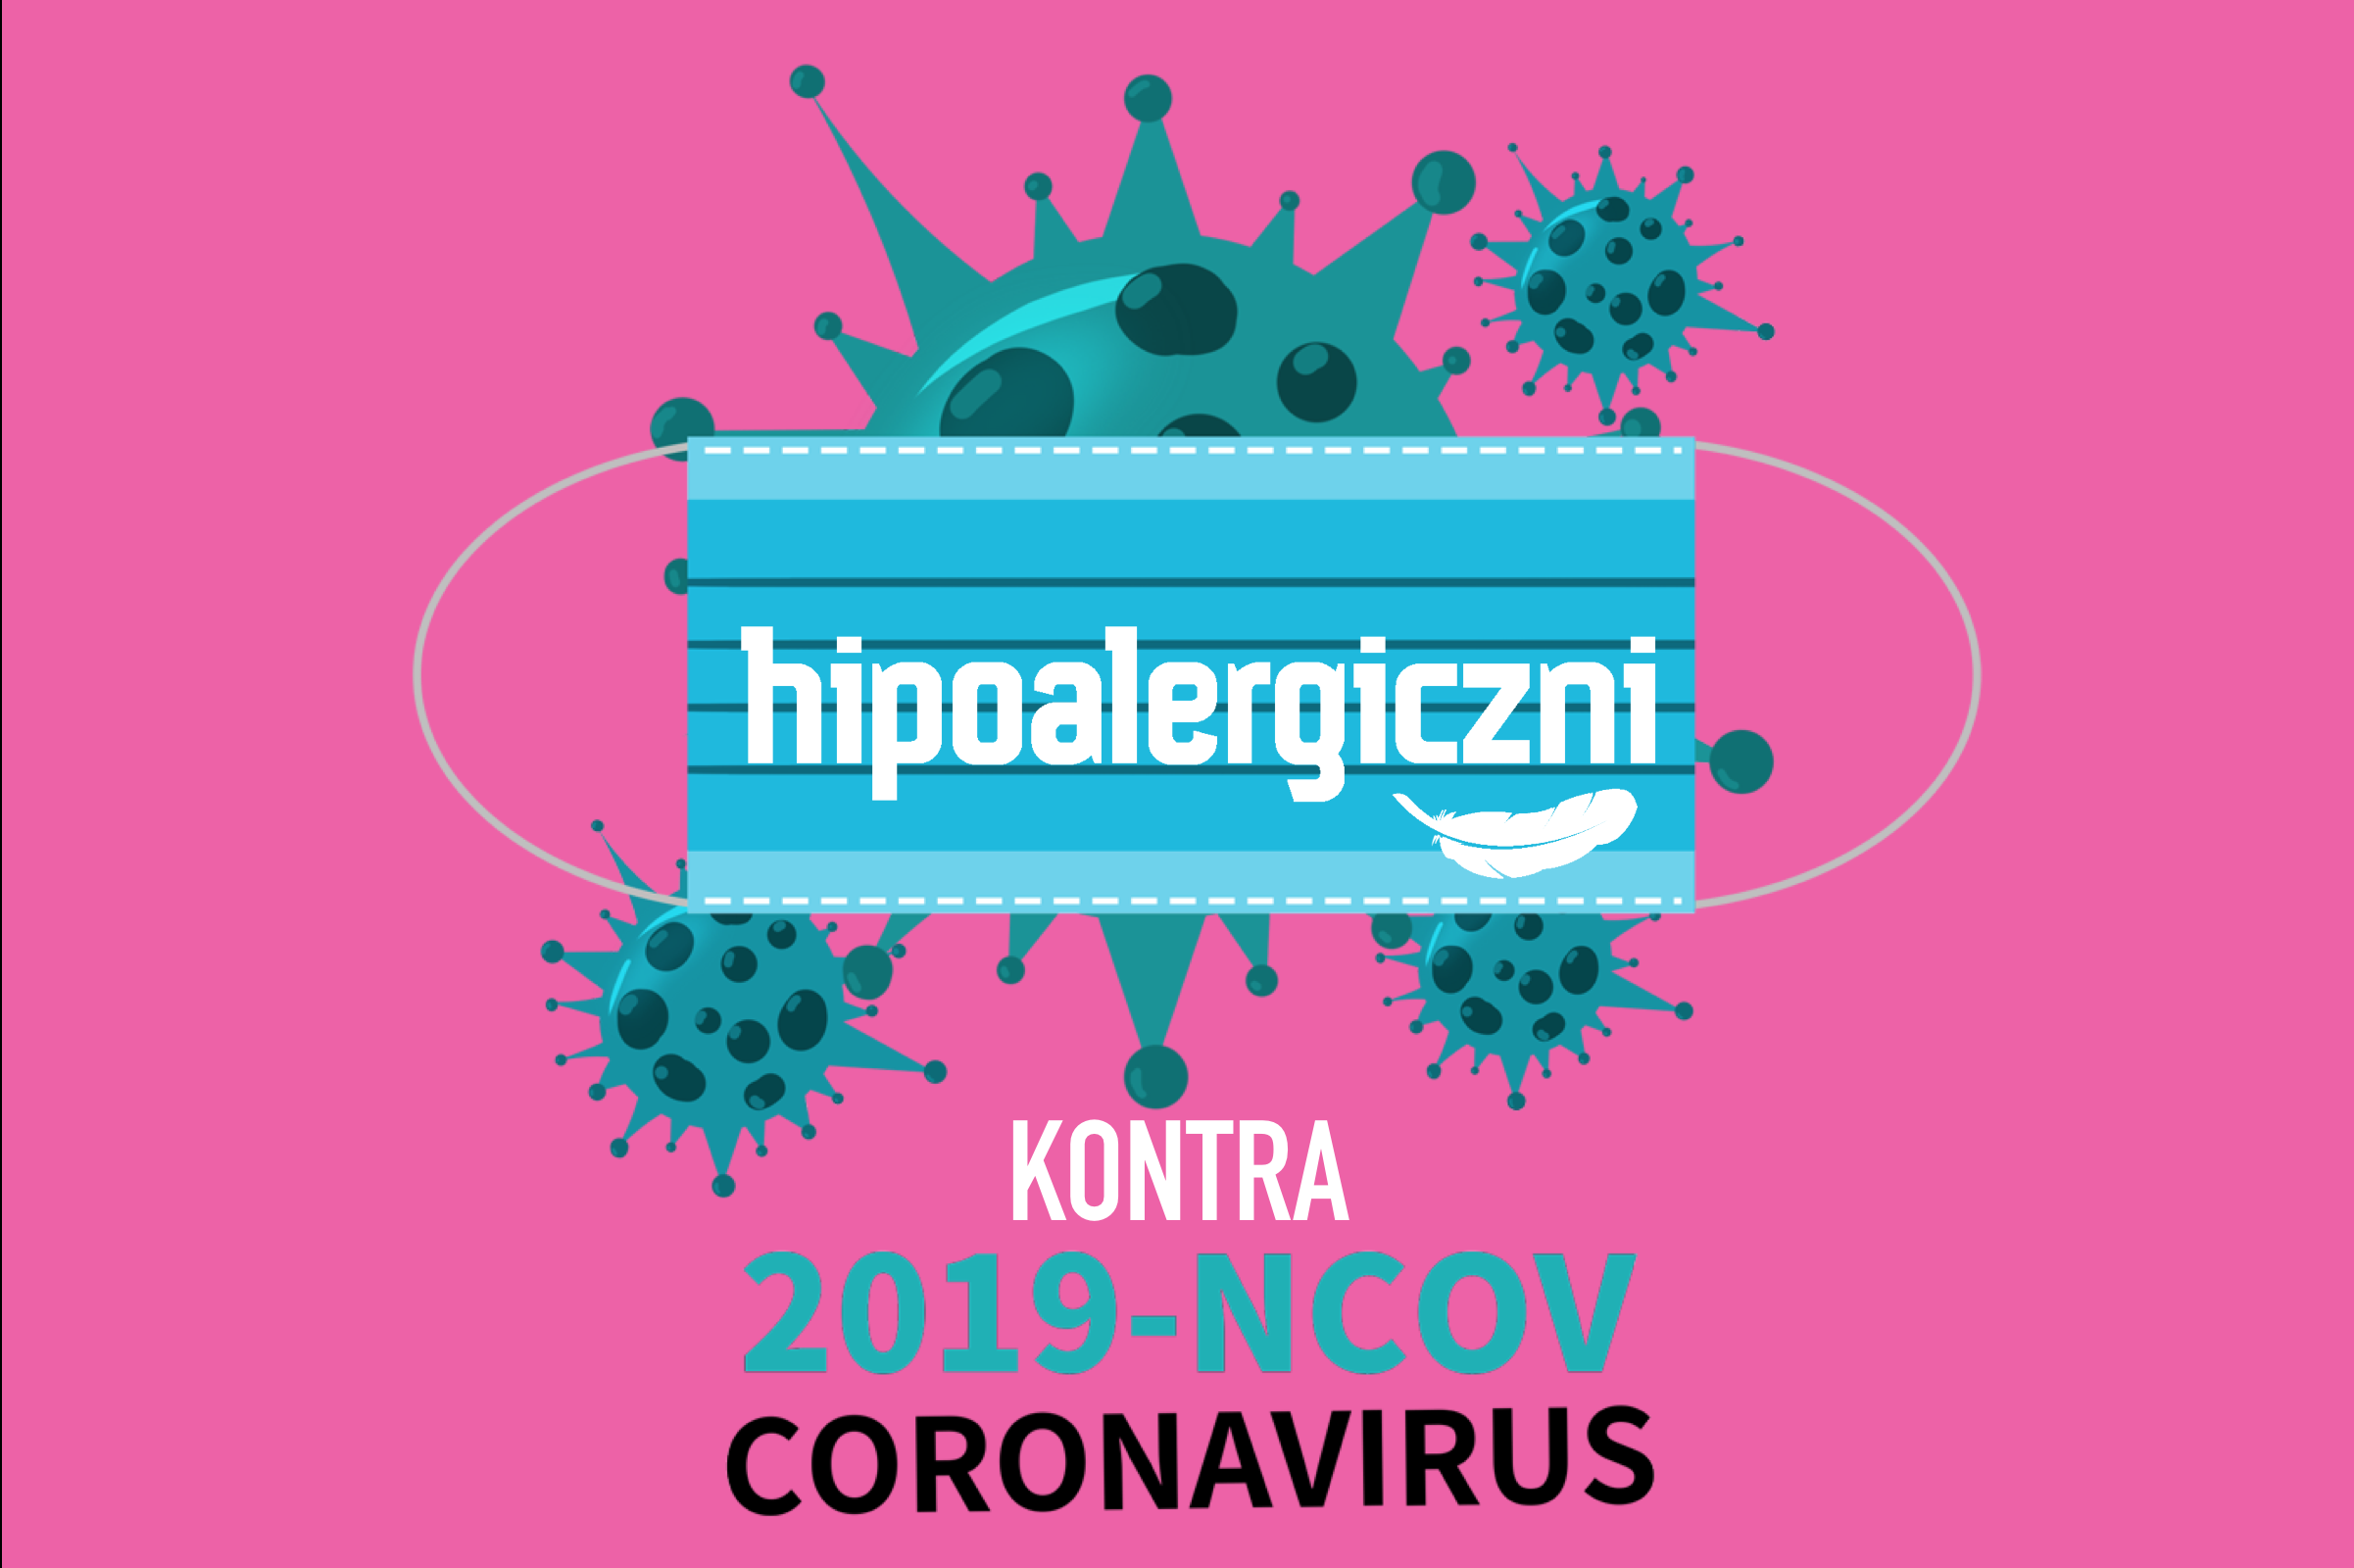 hipoalergiczni-odpornosc-contra-wirus-koronawirus-walka-ekozywnosc-main